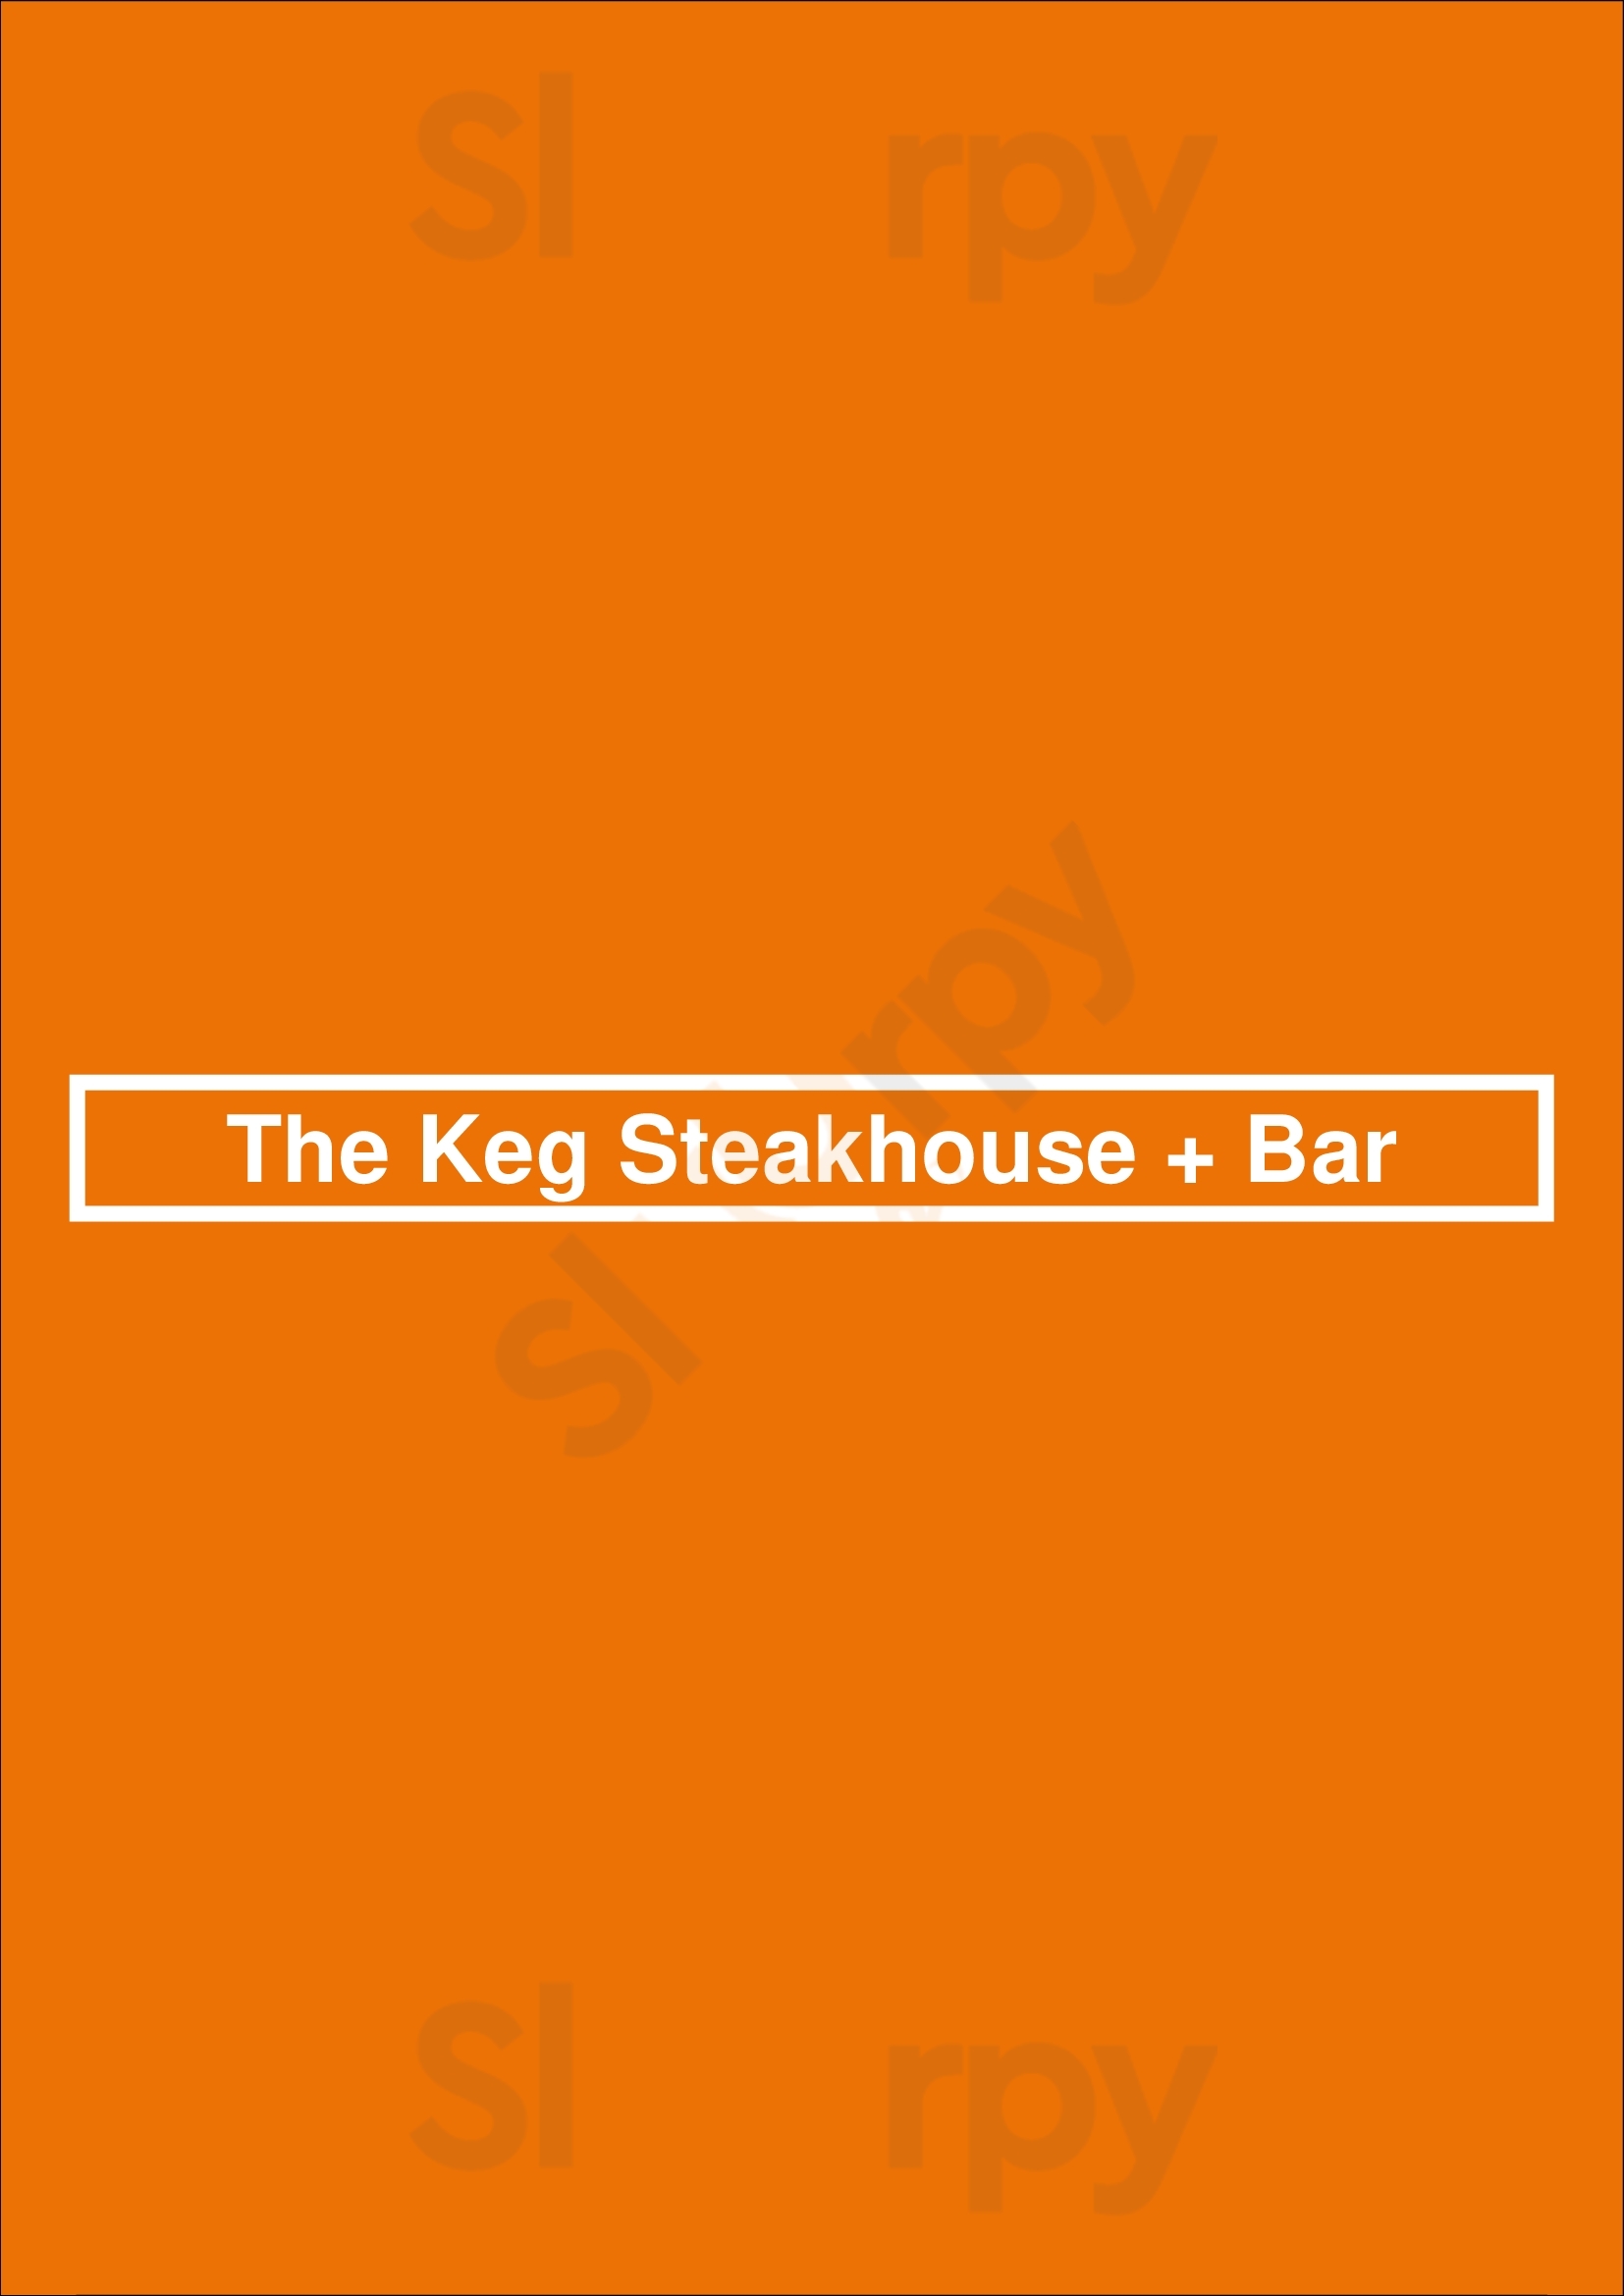 The Keg Steakhouse + Bar - Yonge + Eglinton Toronto Menu - 1